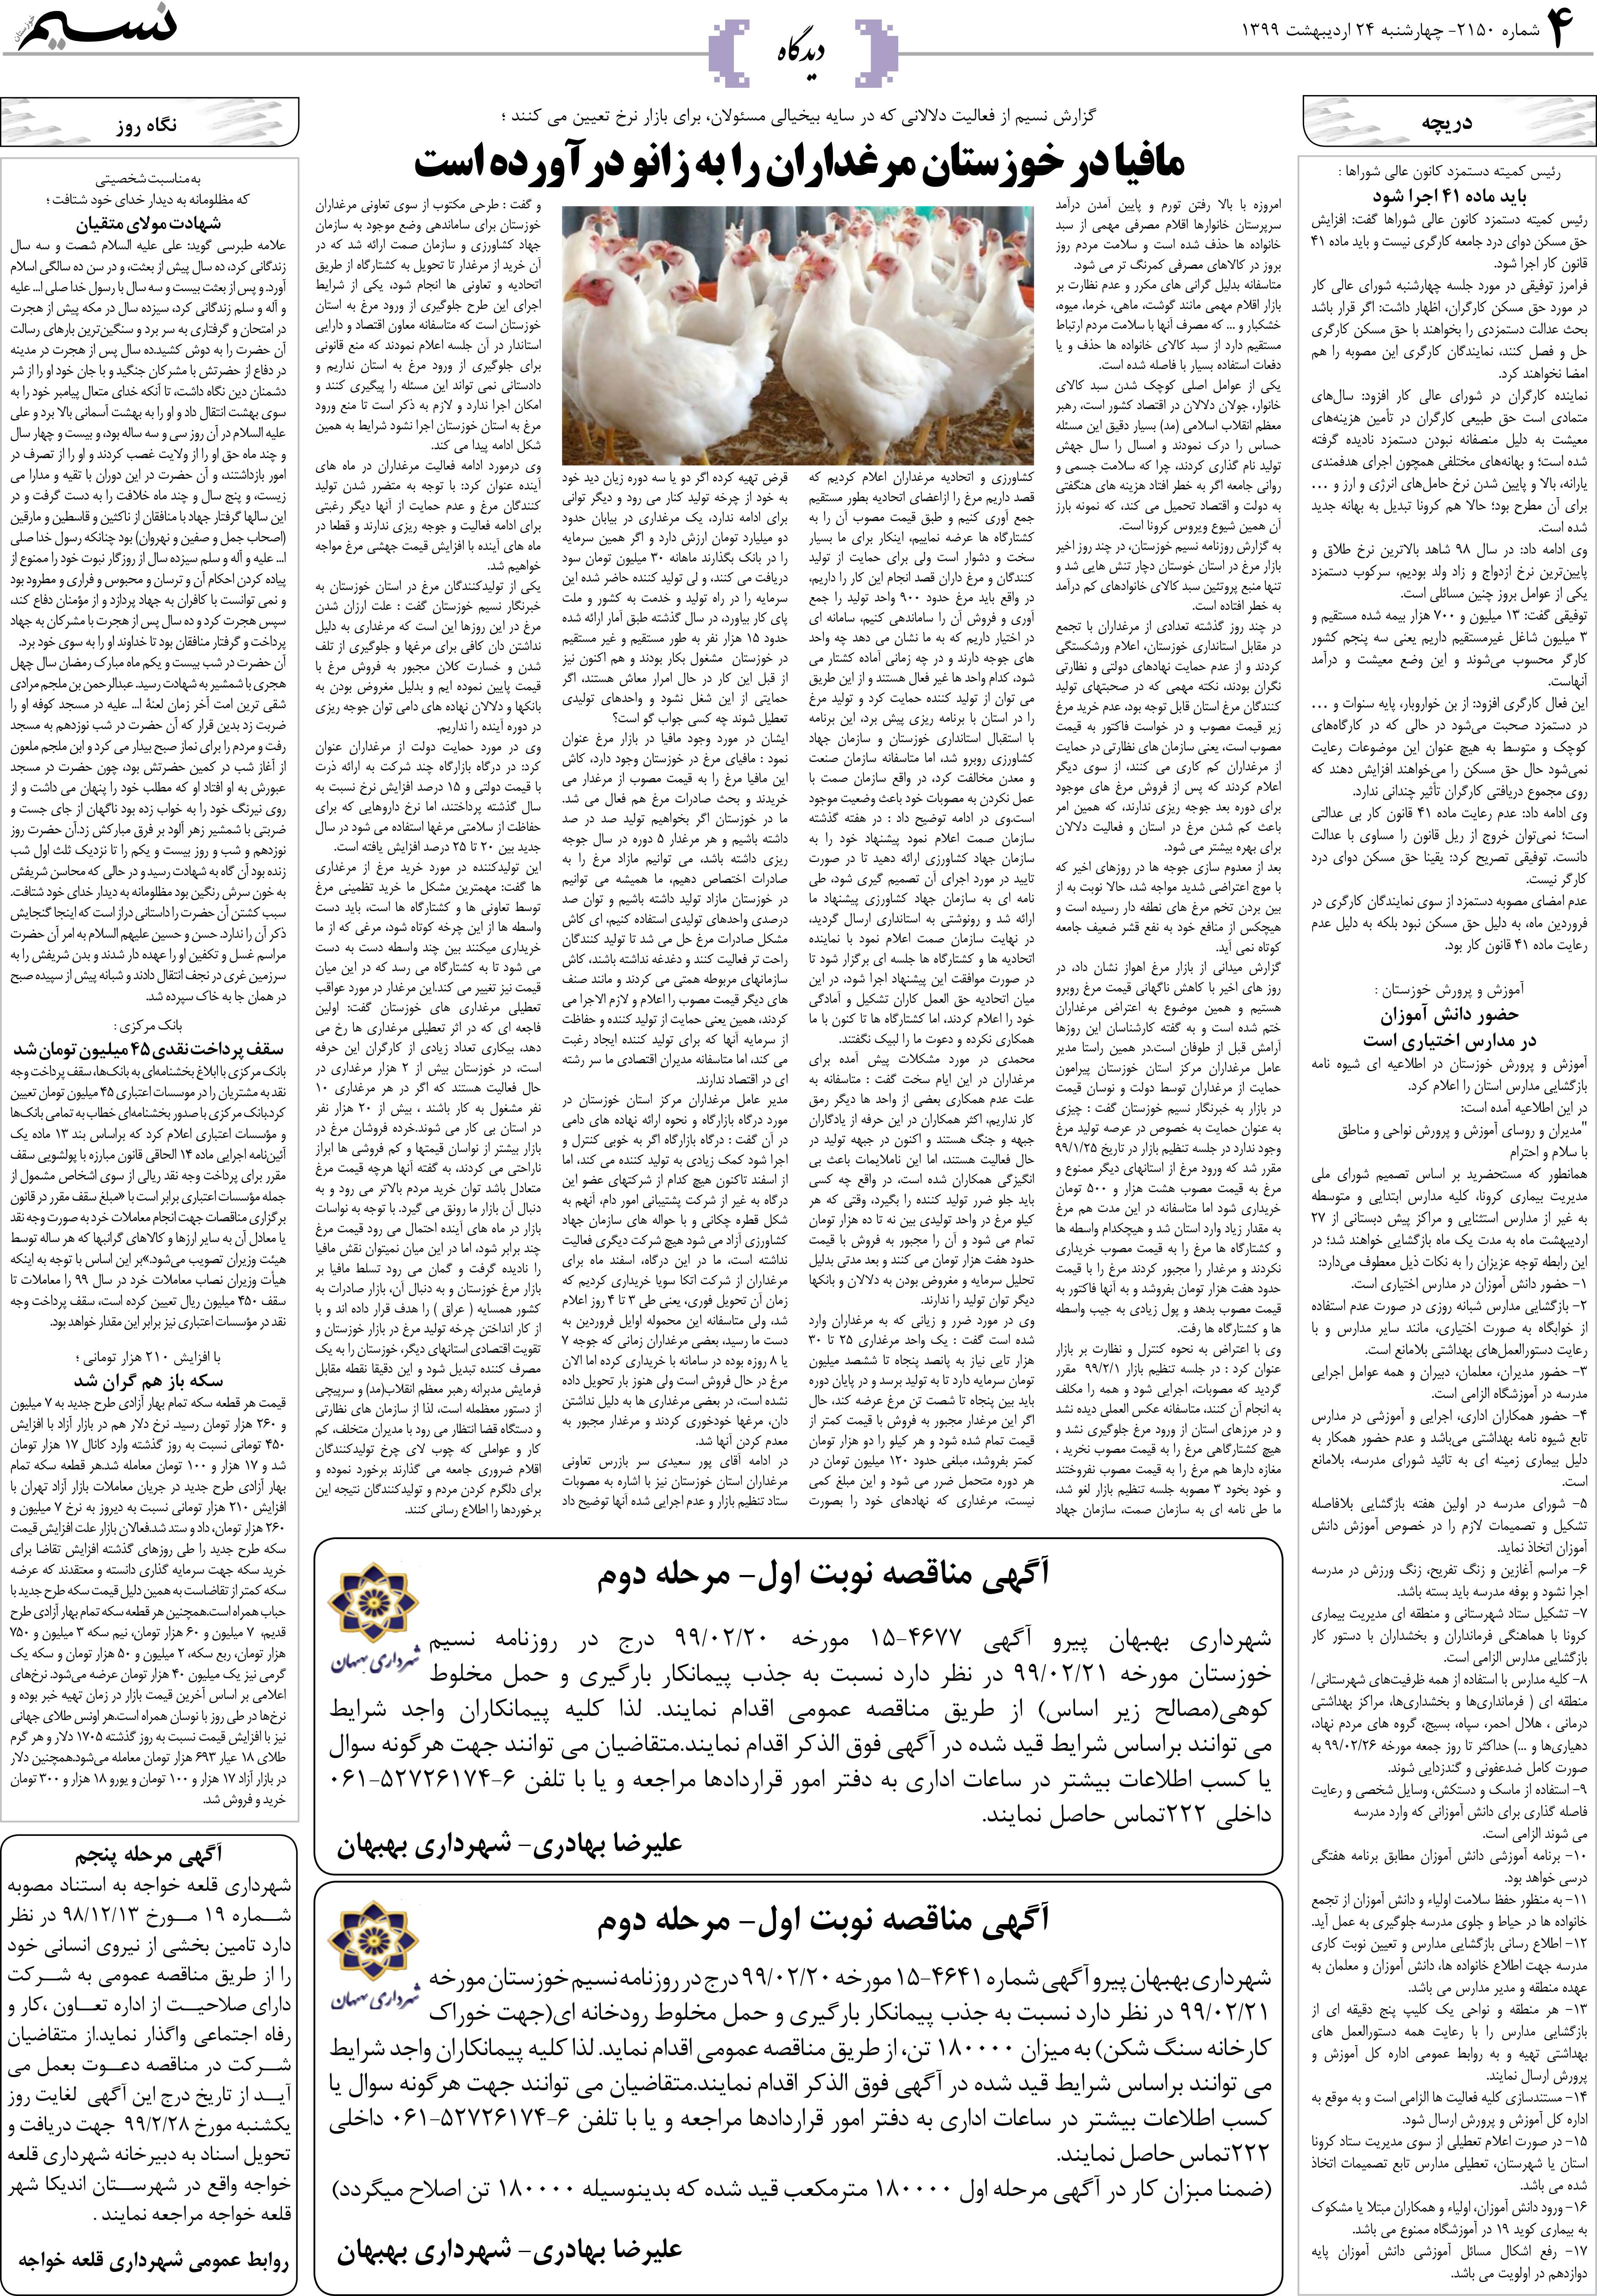 صفحه دیدگاه روزنامه نسیم شماره 2150